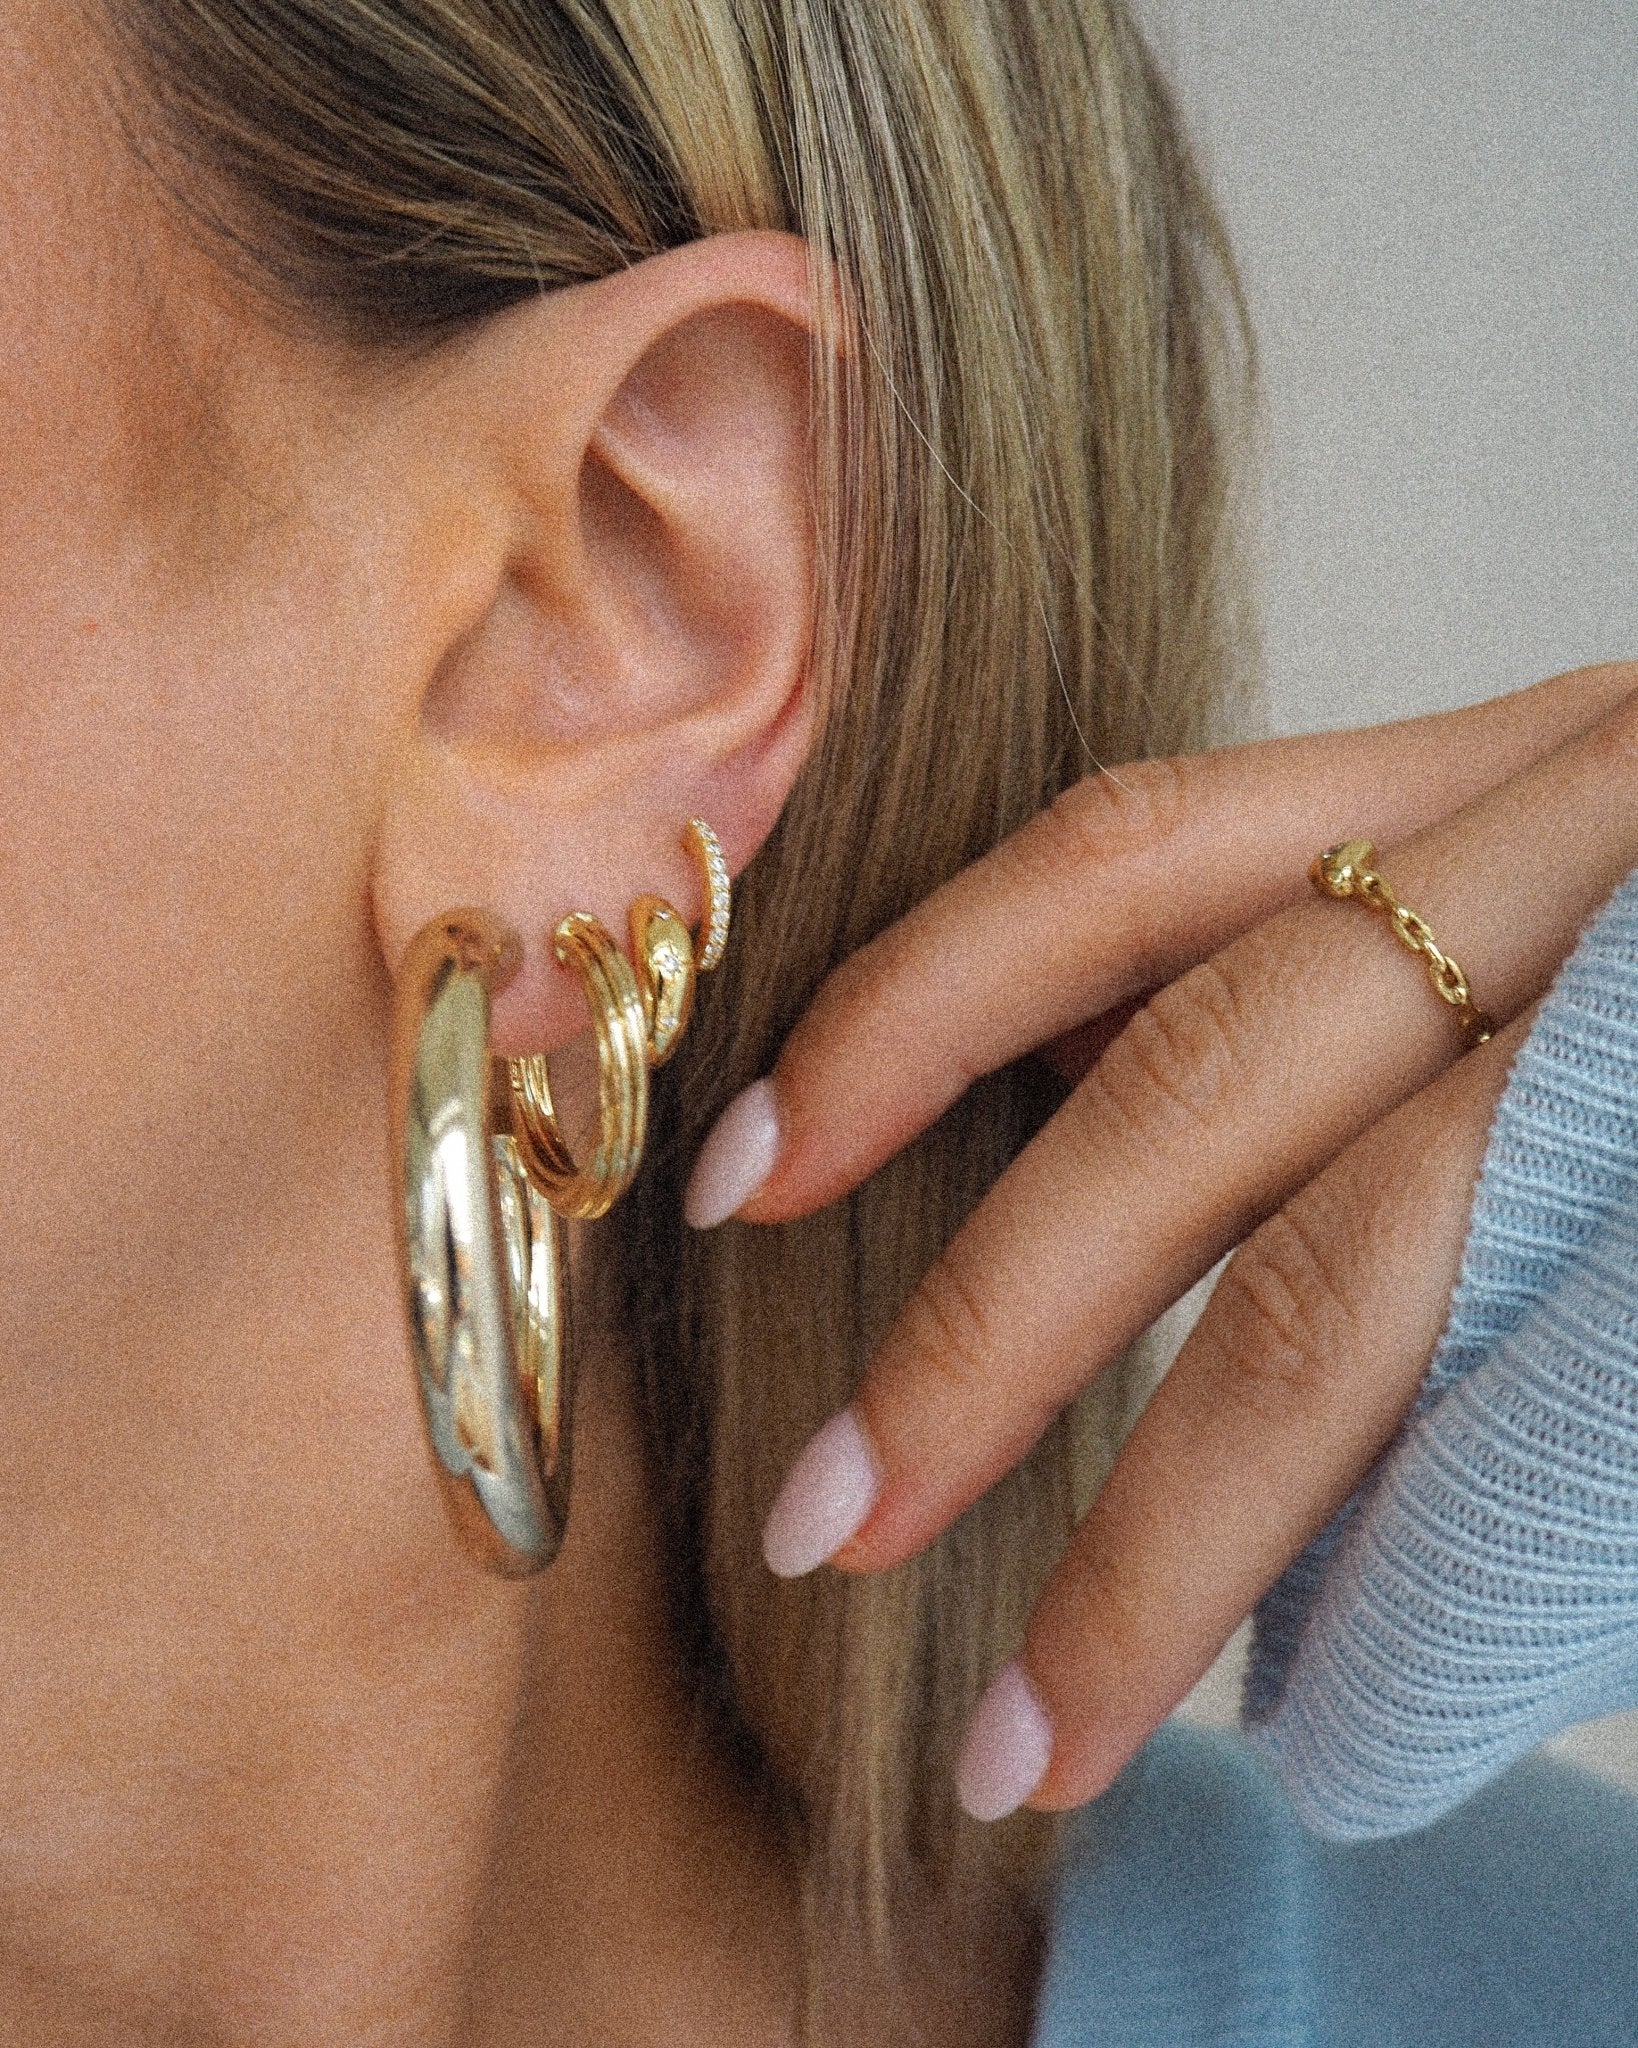 Jill hoop earrings - five and two jewelry